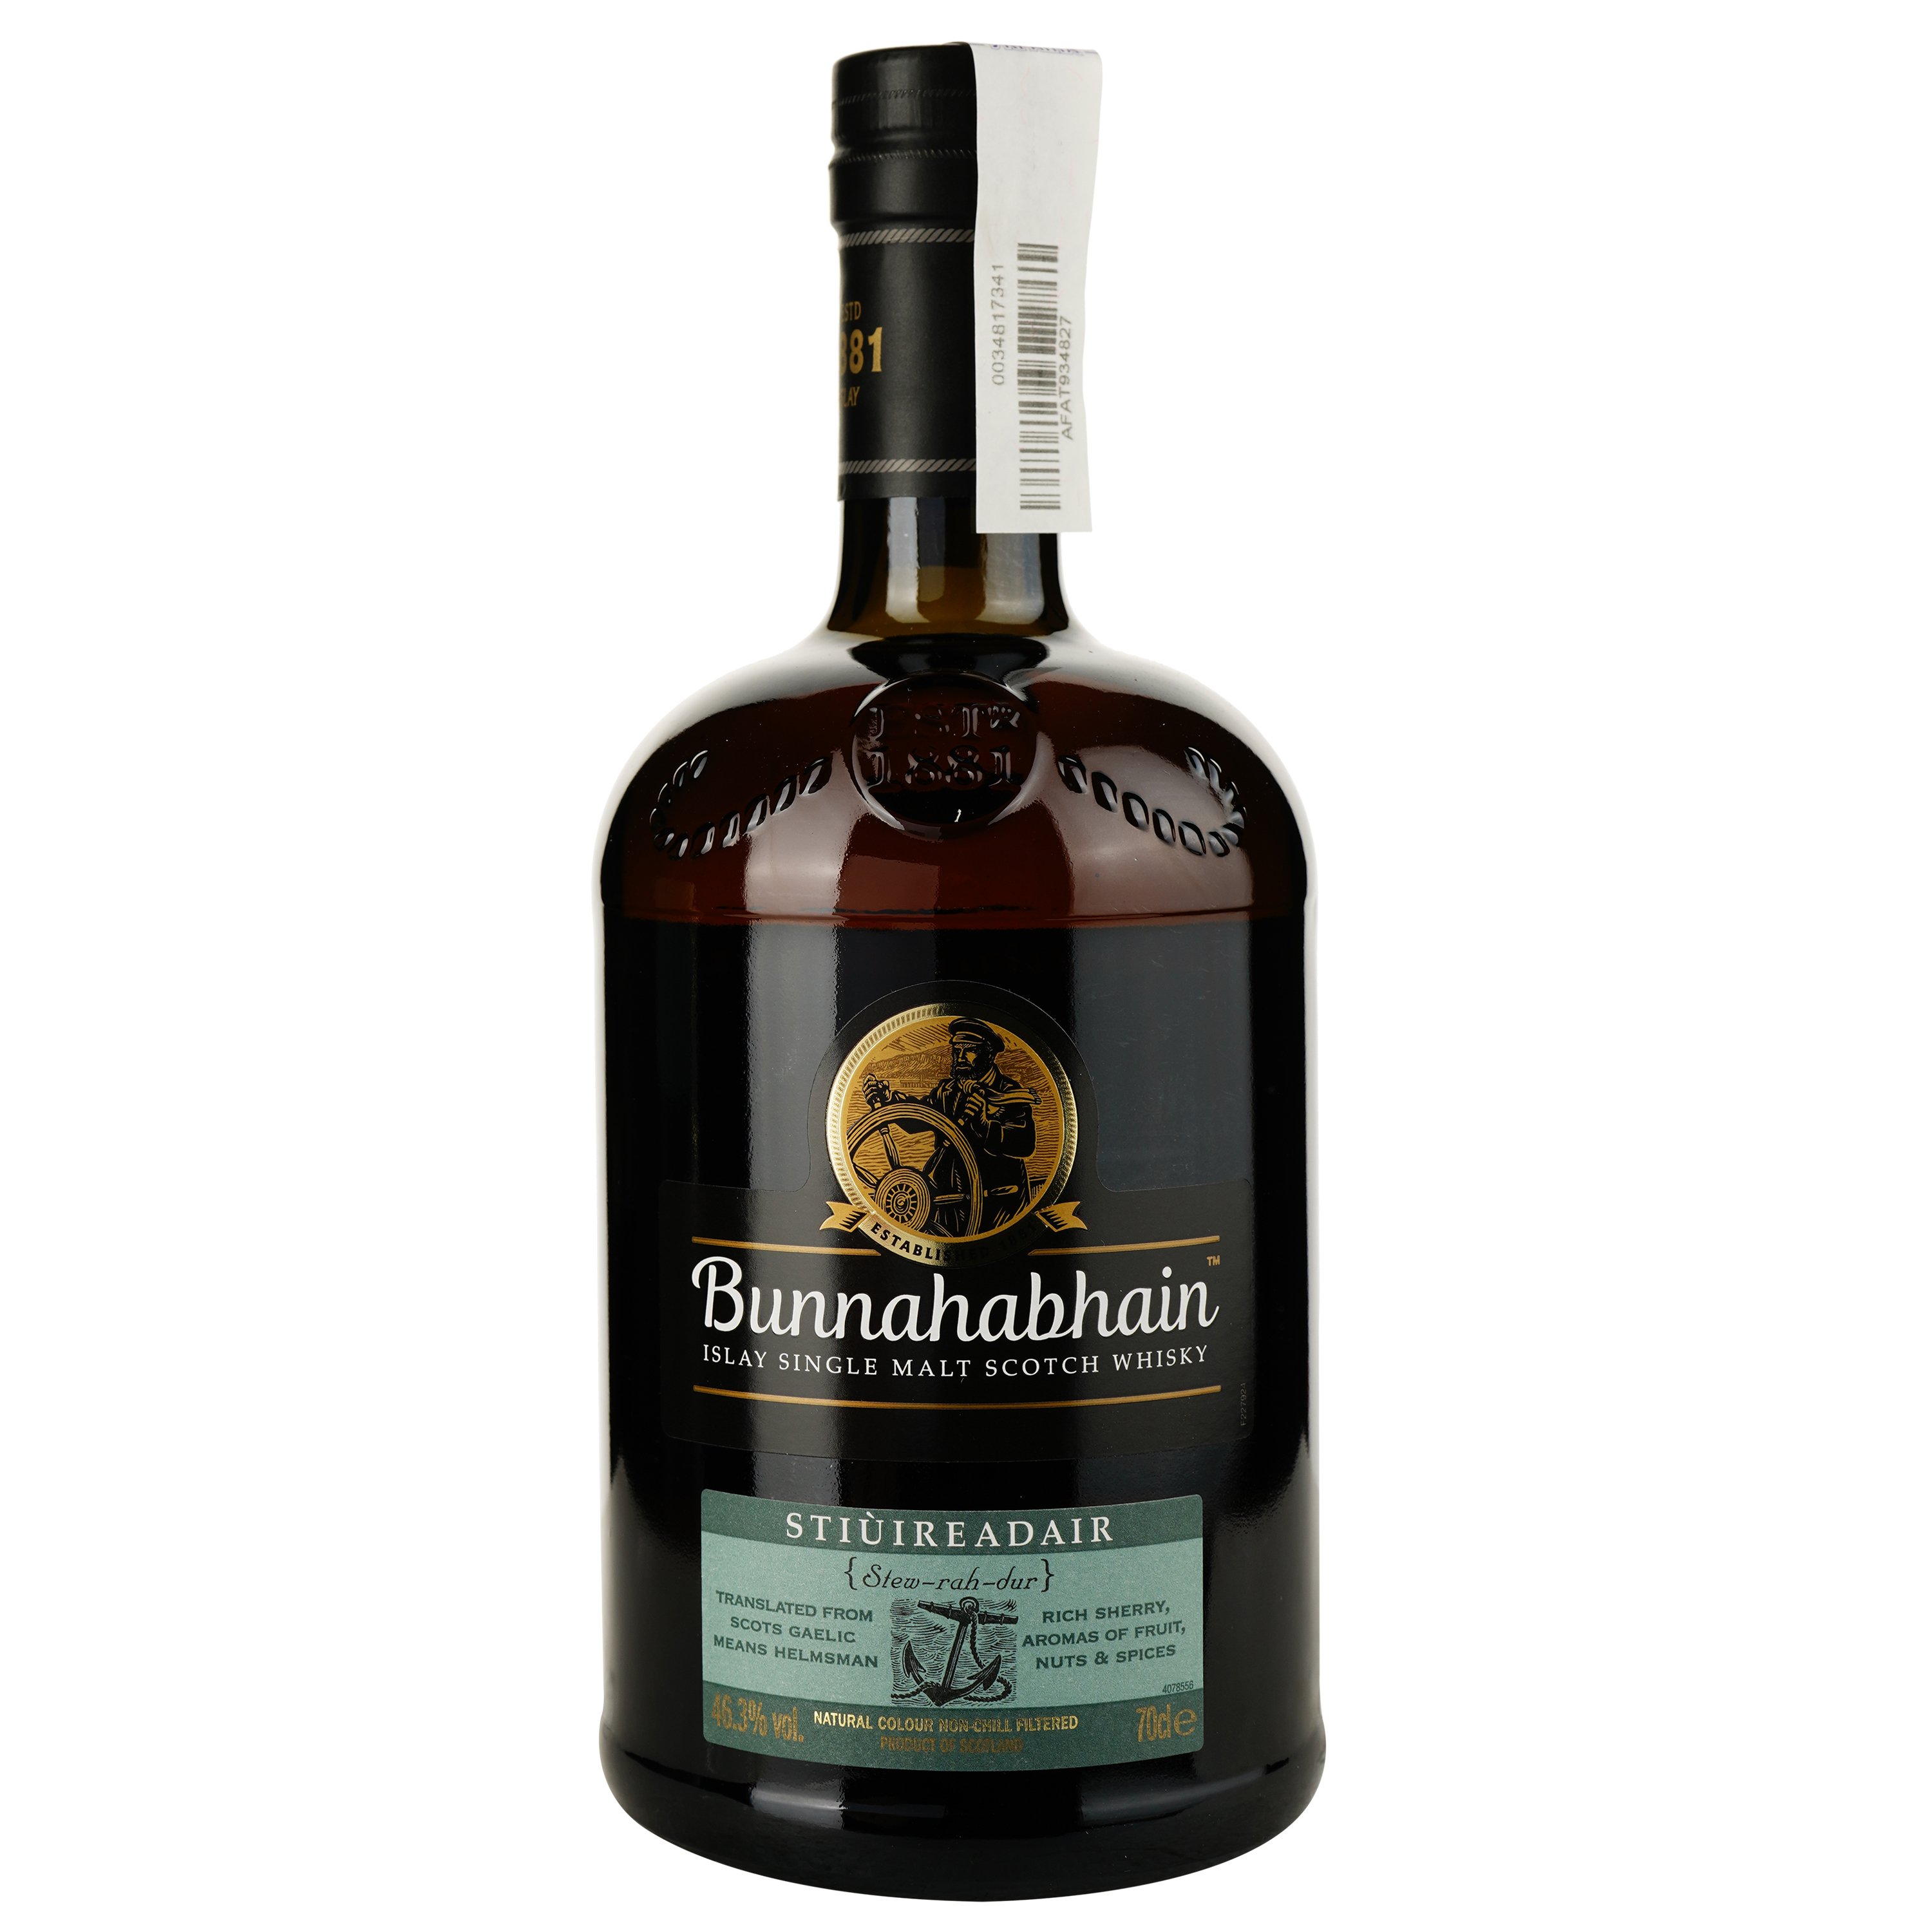 Віскі Bunnahabhain Stiuireadair Single Malt Scotch Whisky 46.3% 0.7 л, в подарунковій упаковці - фото 2